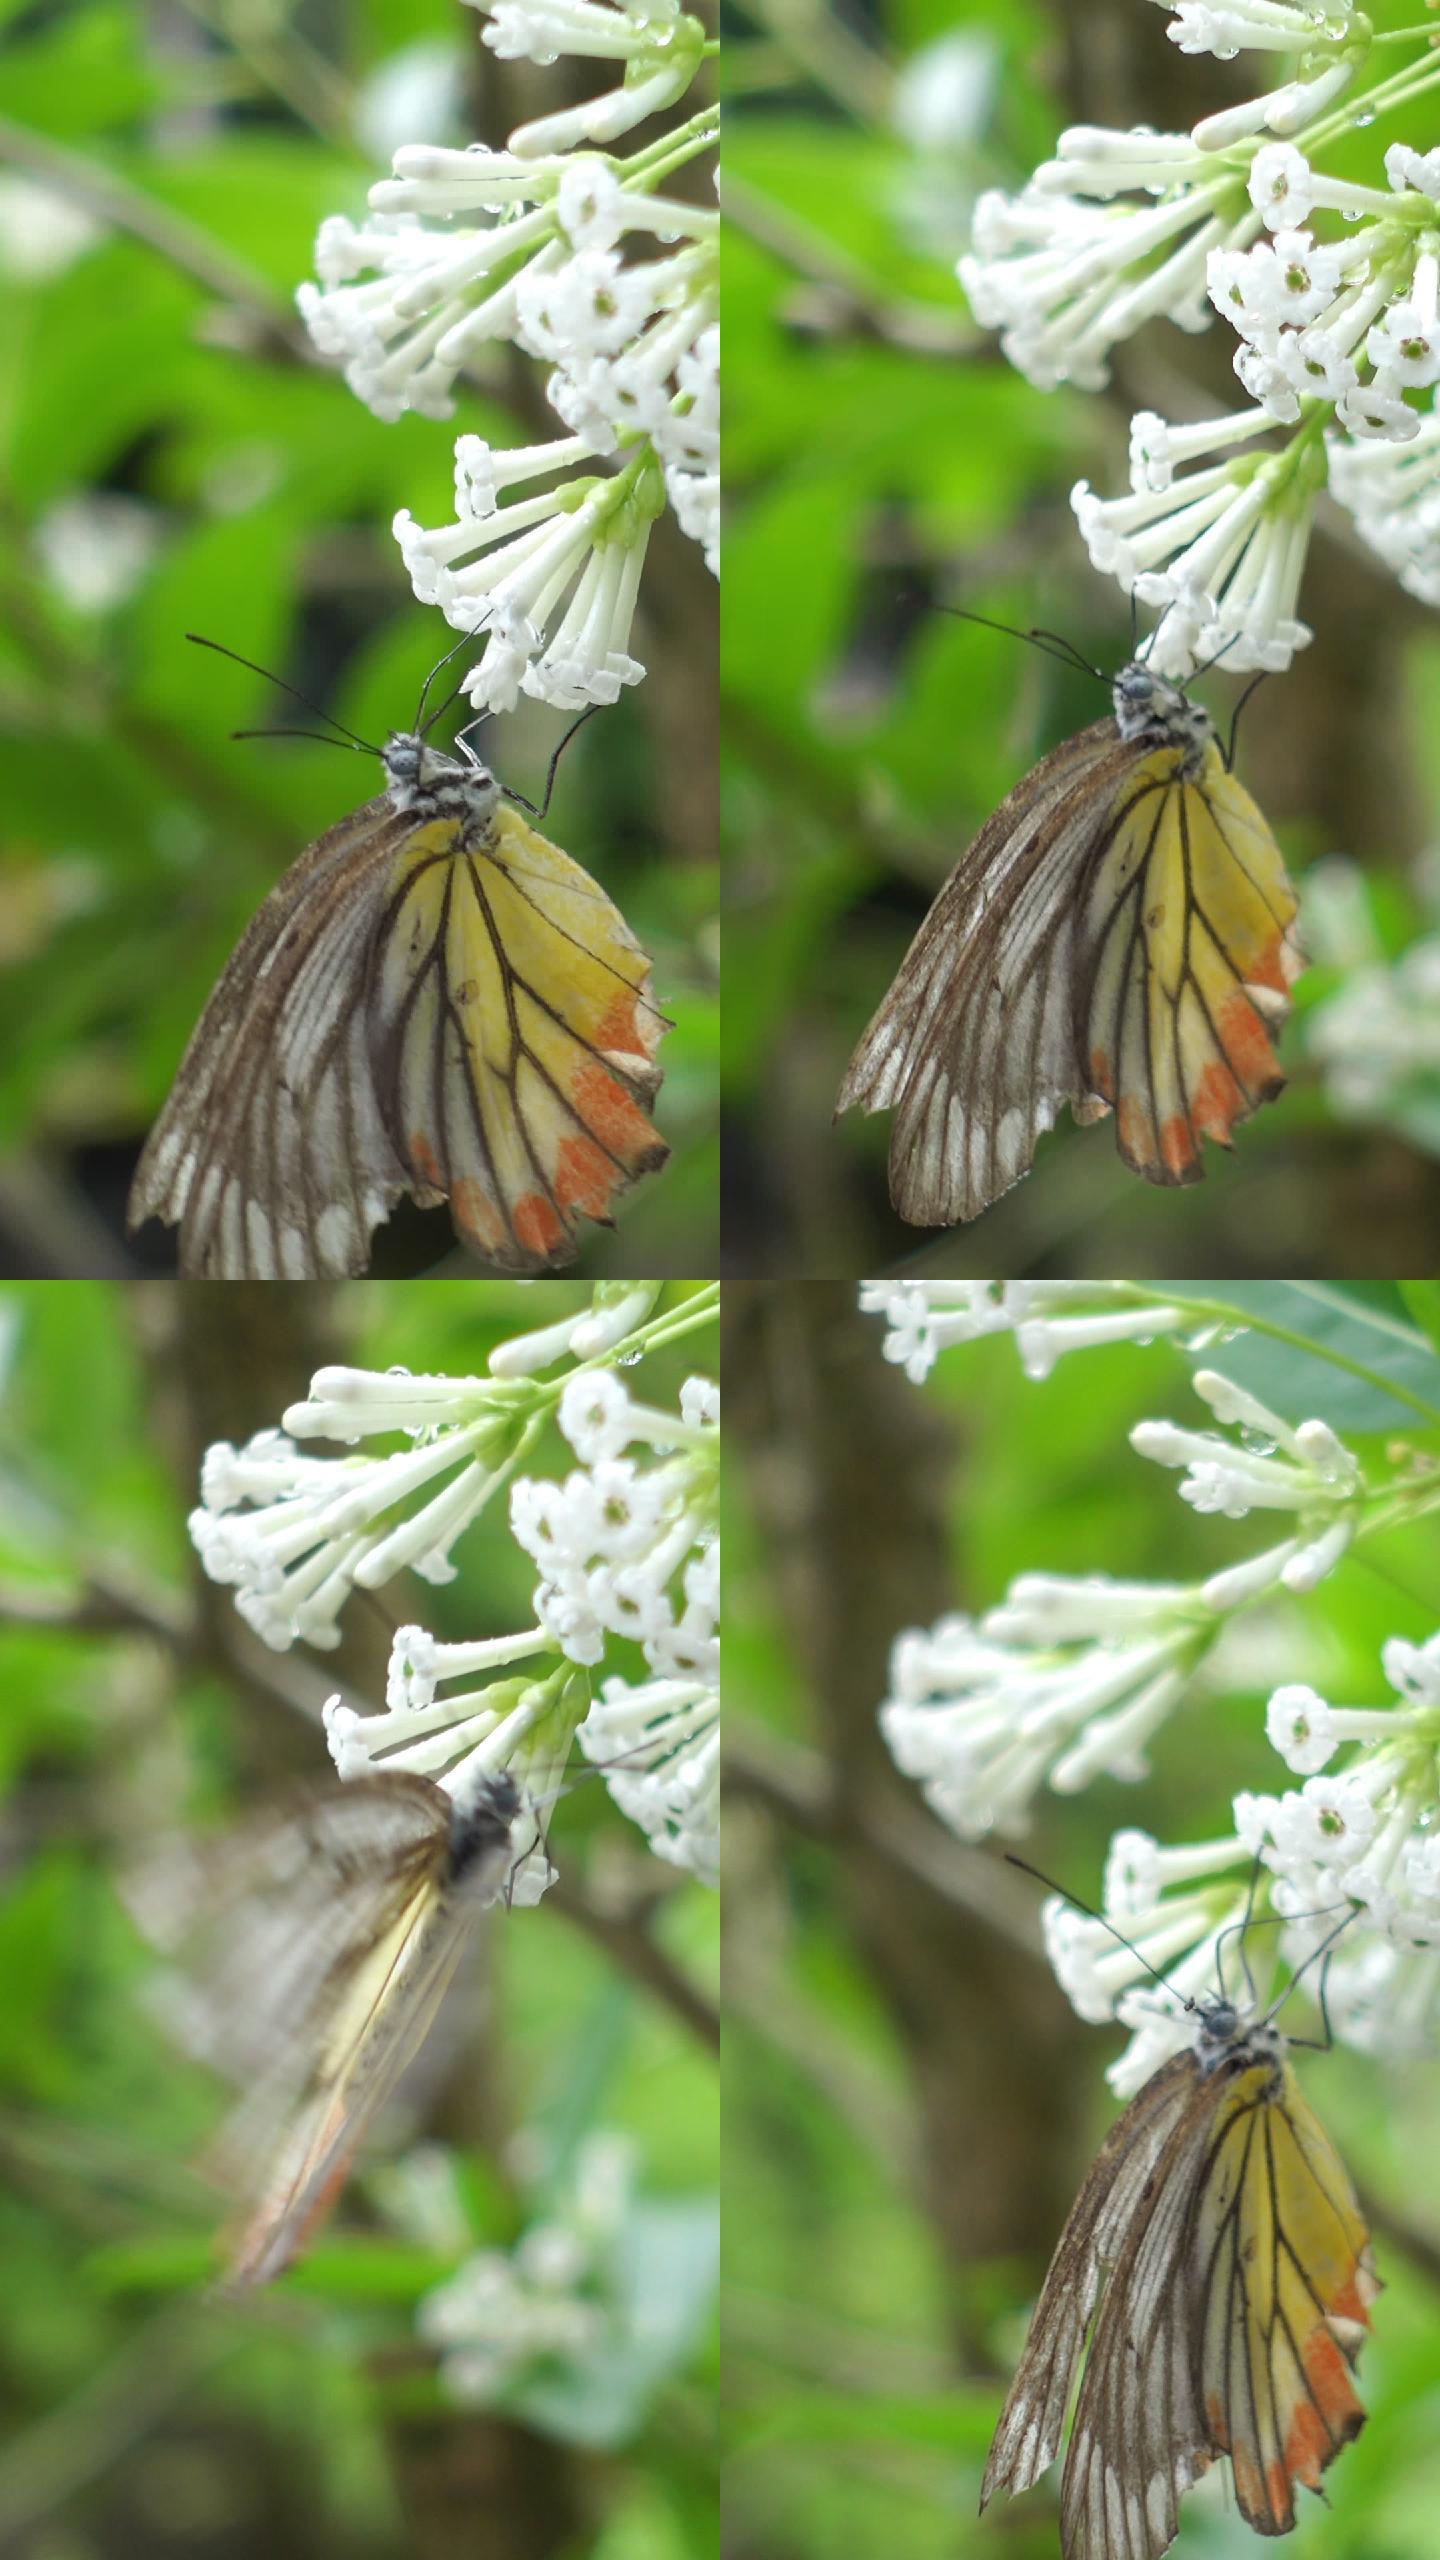 蝴蝶在白花上吸蜜蝴蝶